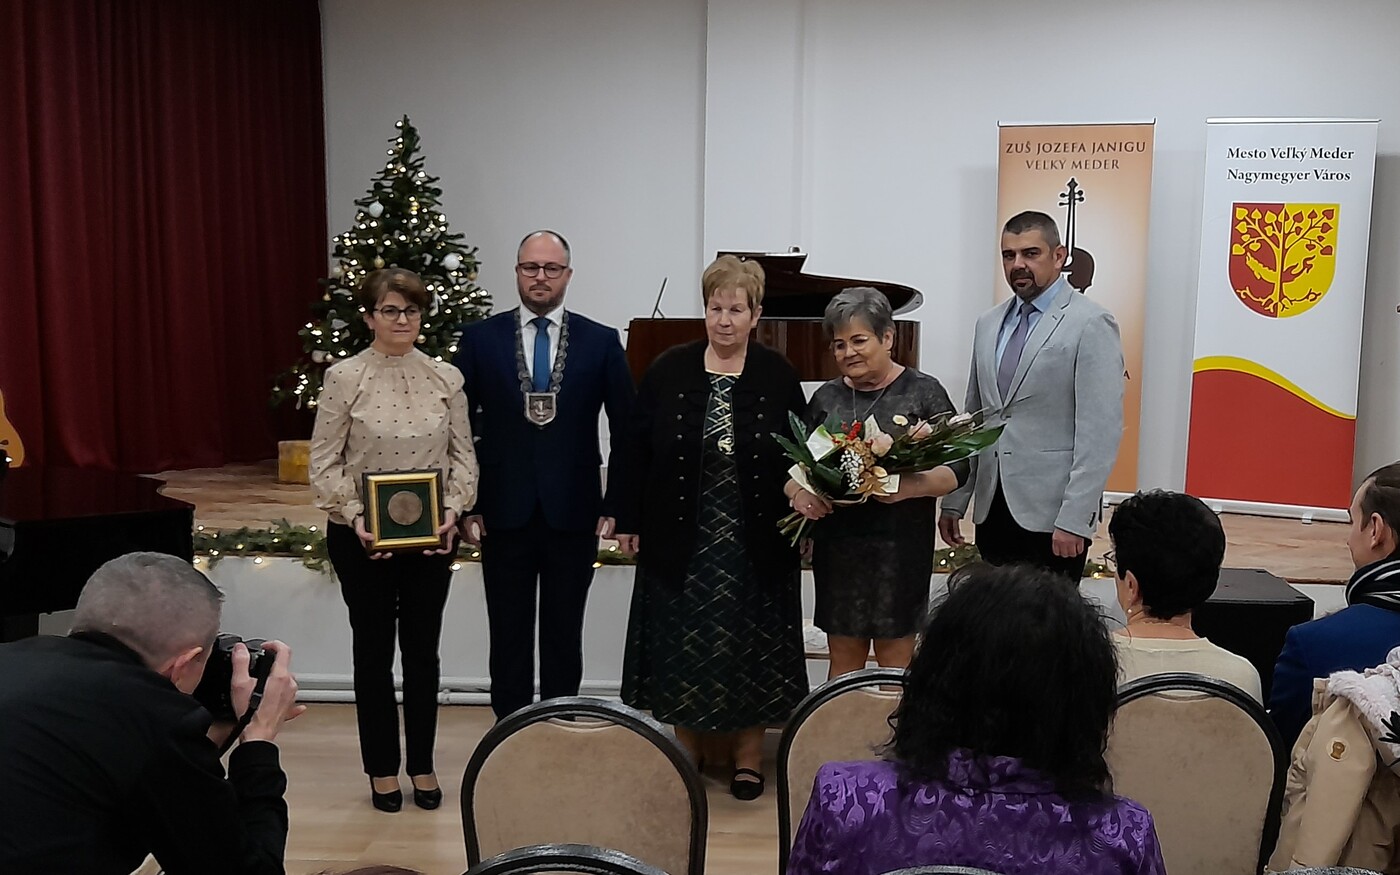 Pro urbe díjat kapott az Iqus Polgári Társulás (KÉPEK és VIDEÓ)